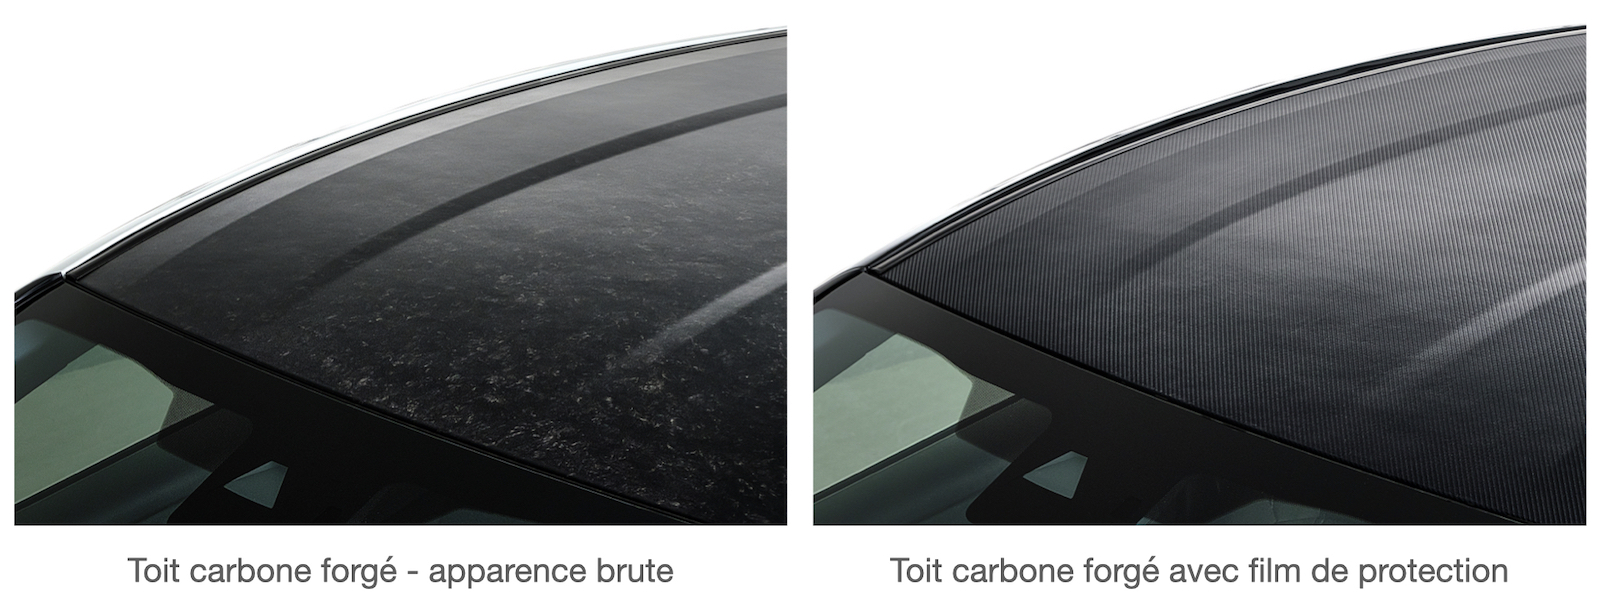 Toit carbone forgé Toyota GR Yaris avec film de protection